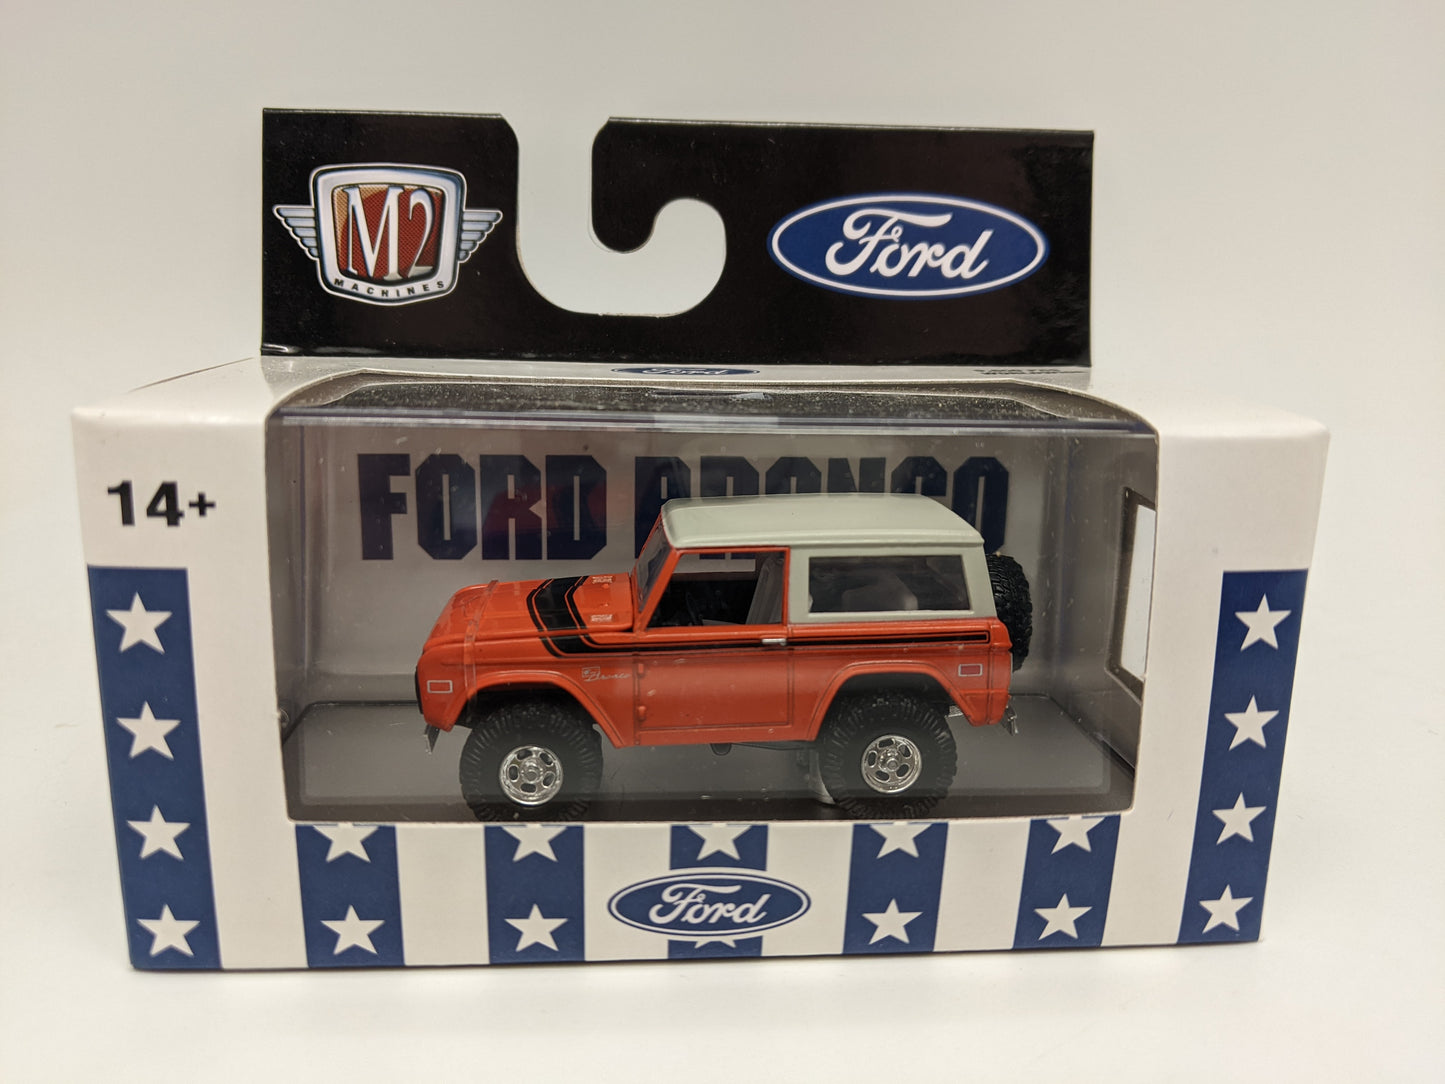 M2 1976 Ford Bronco